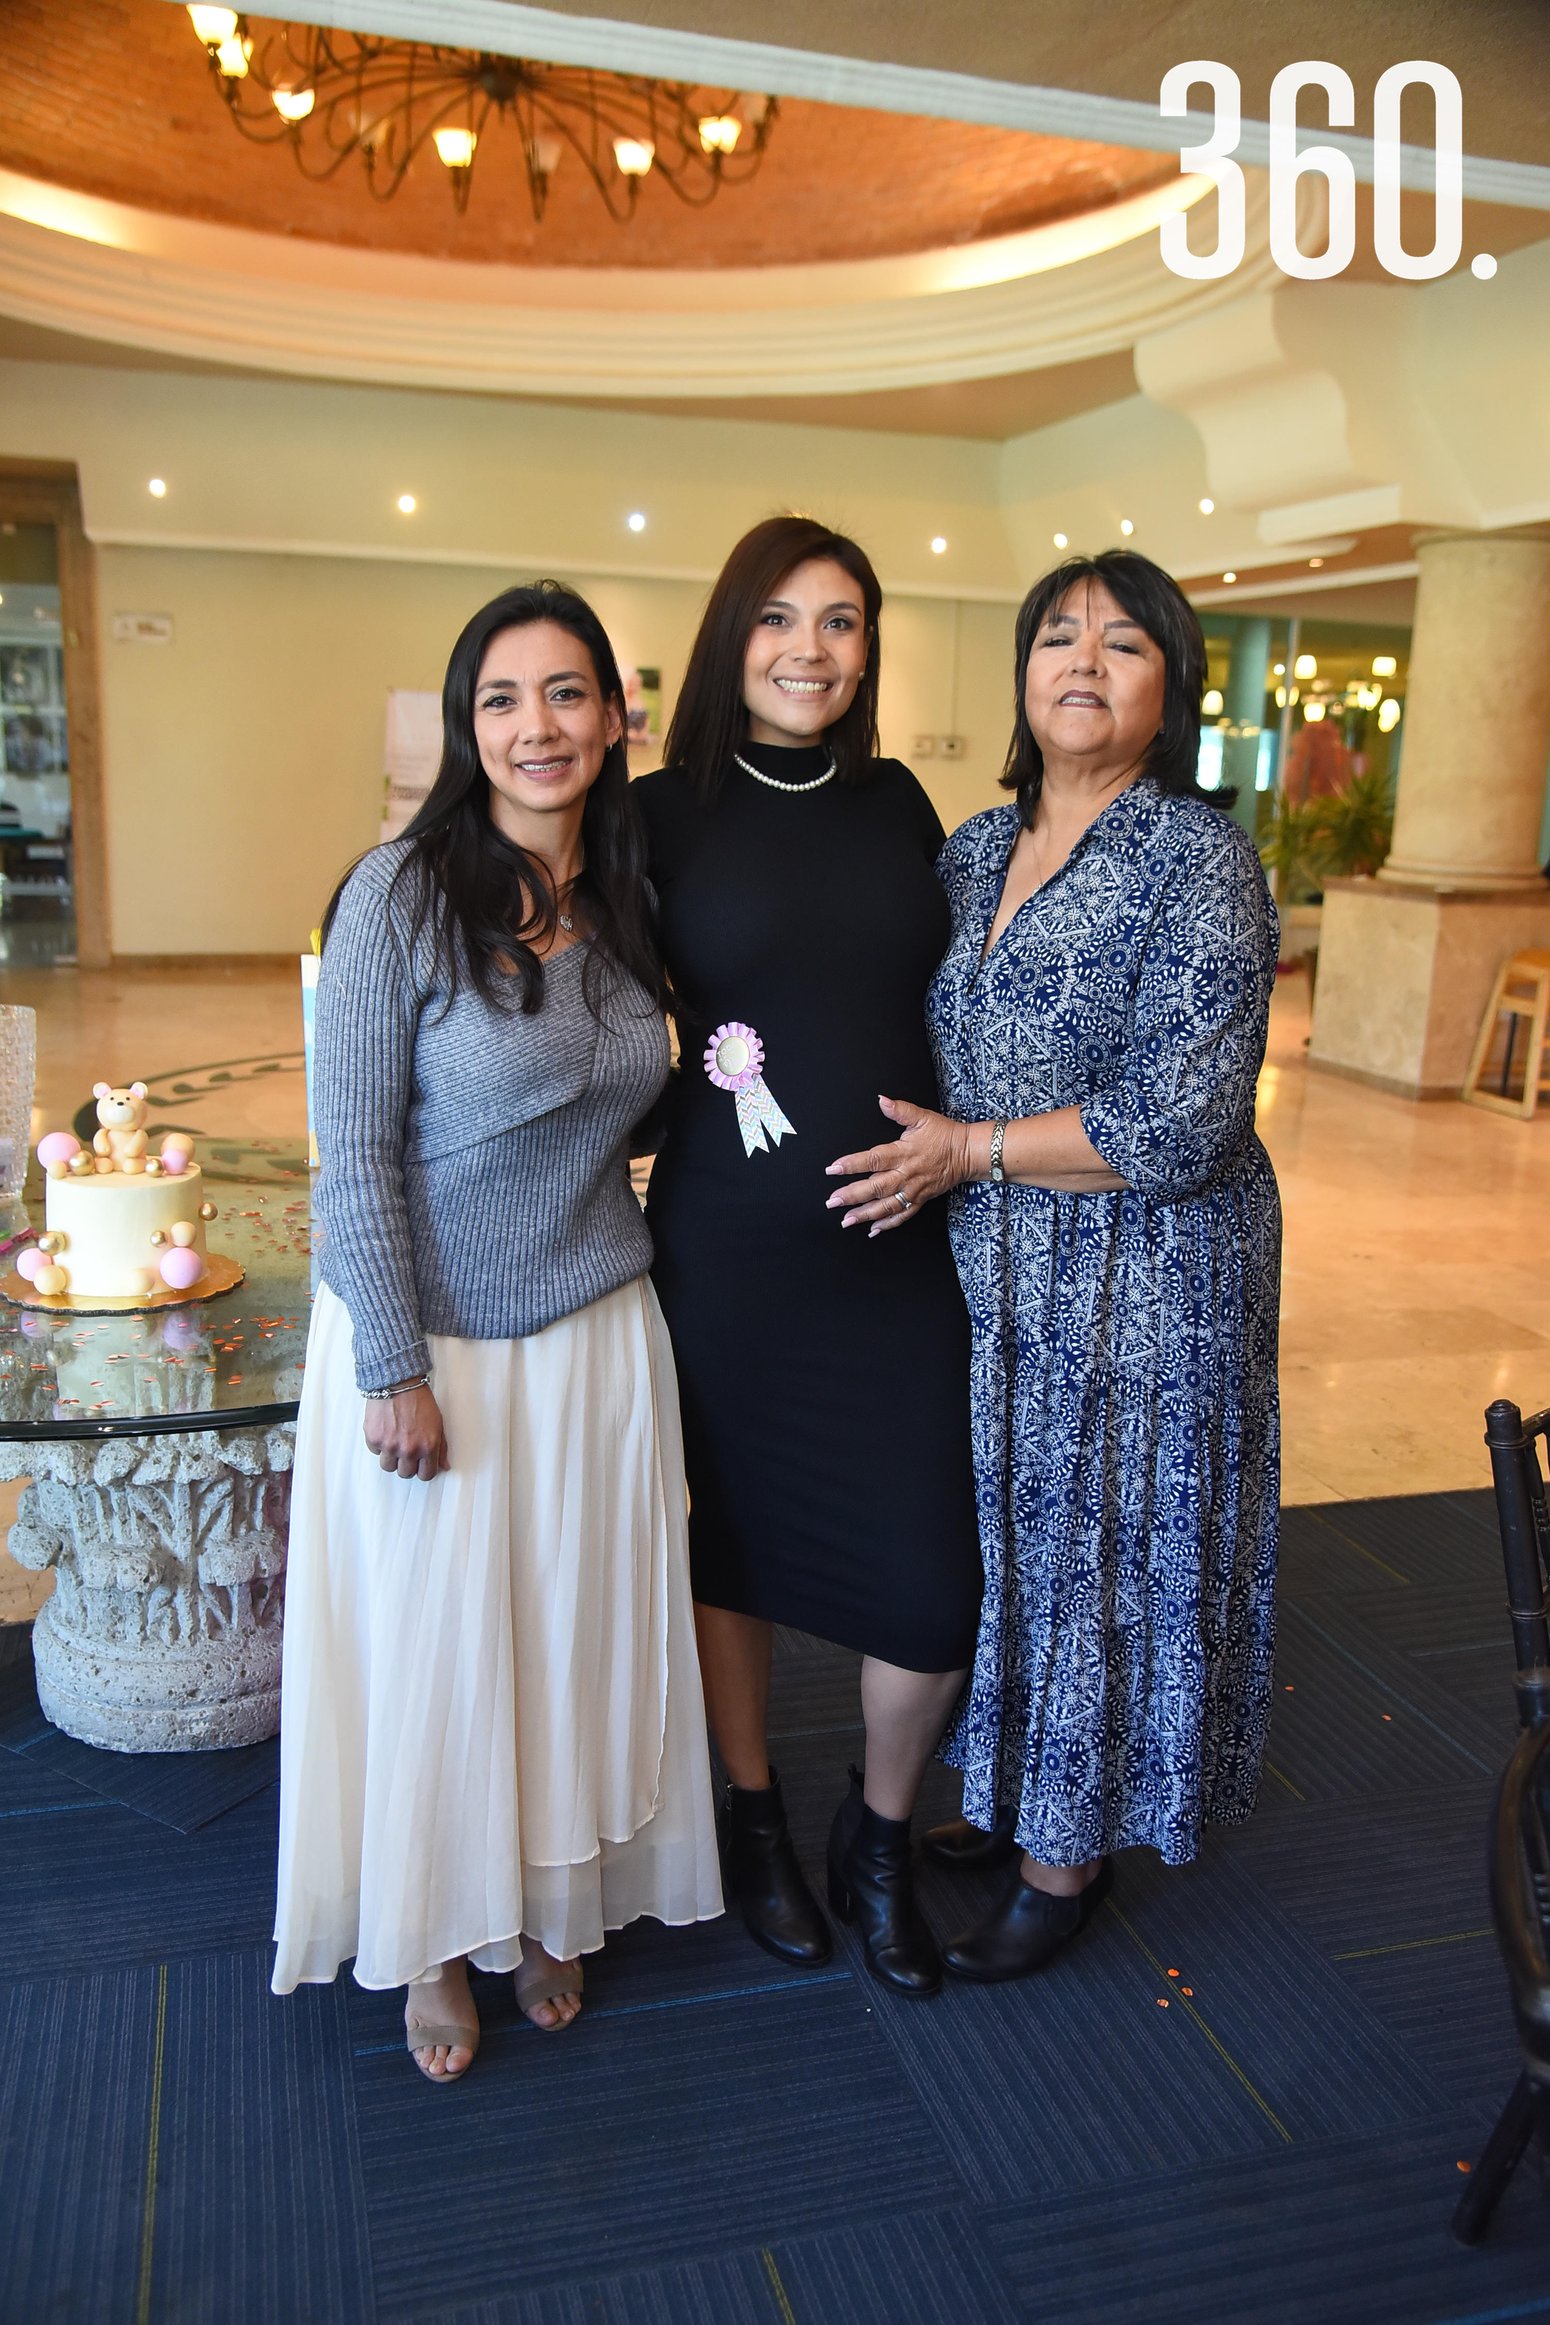 La festejada con su mamá Xitlali Quijada y su hermana Xitlali Alcaraz.